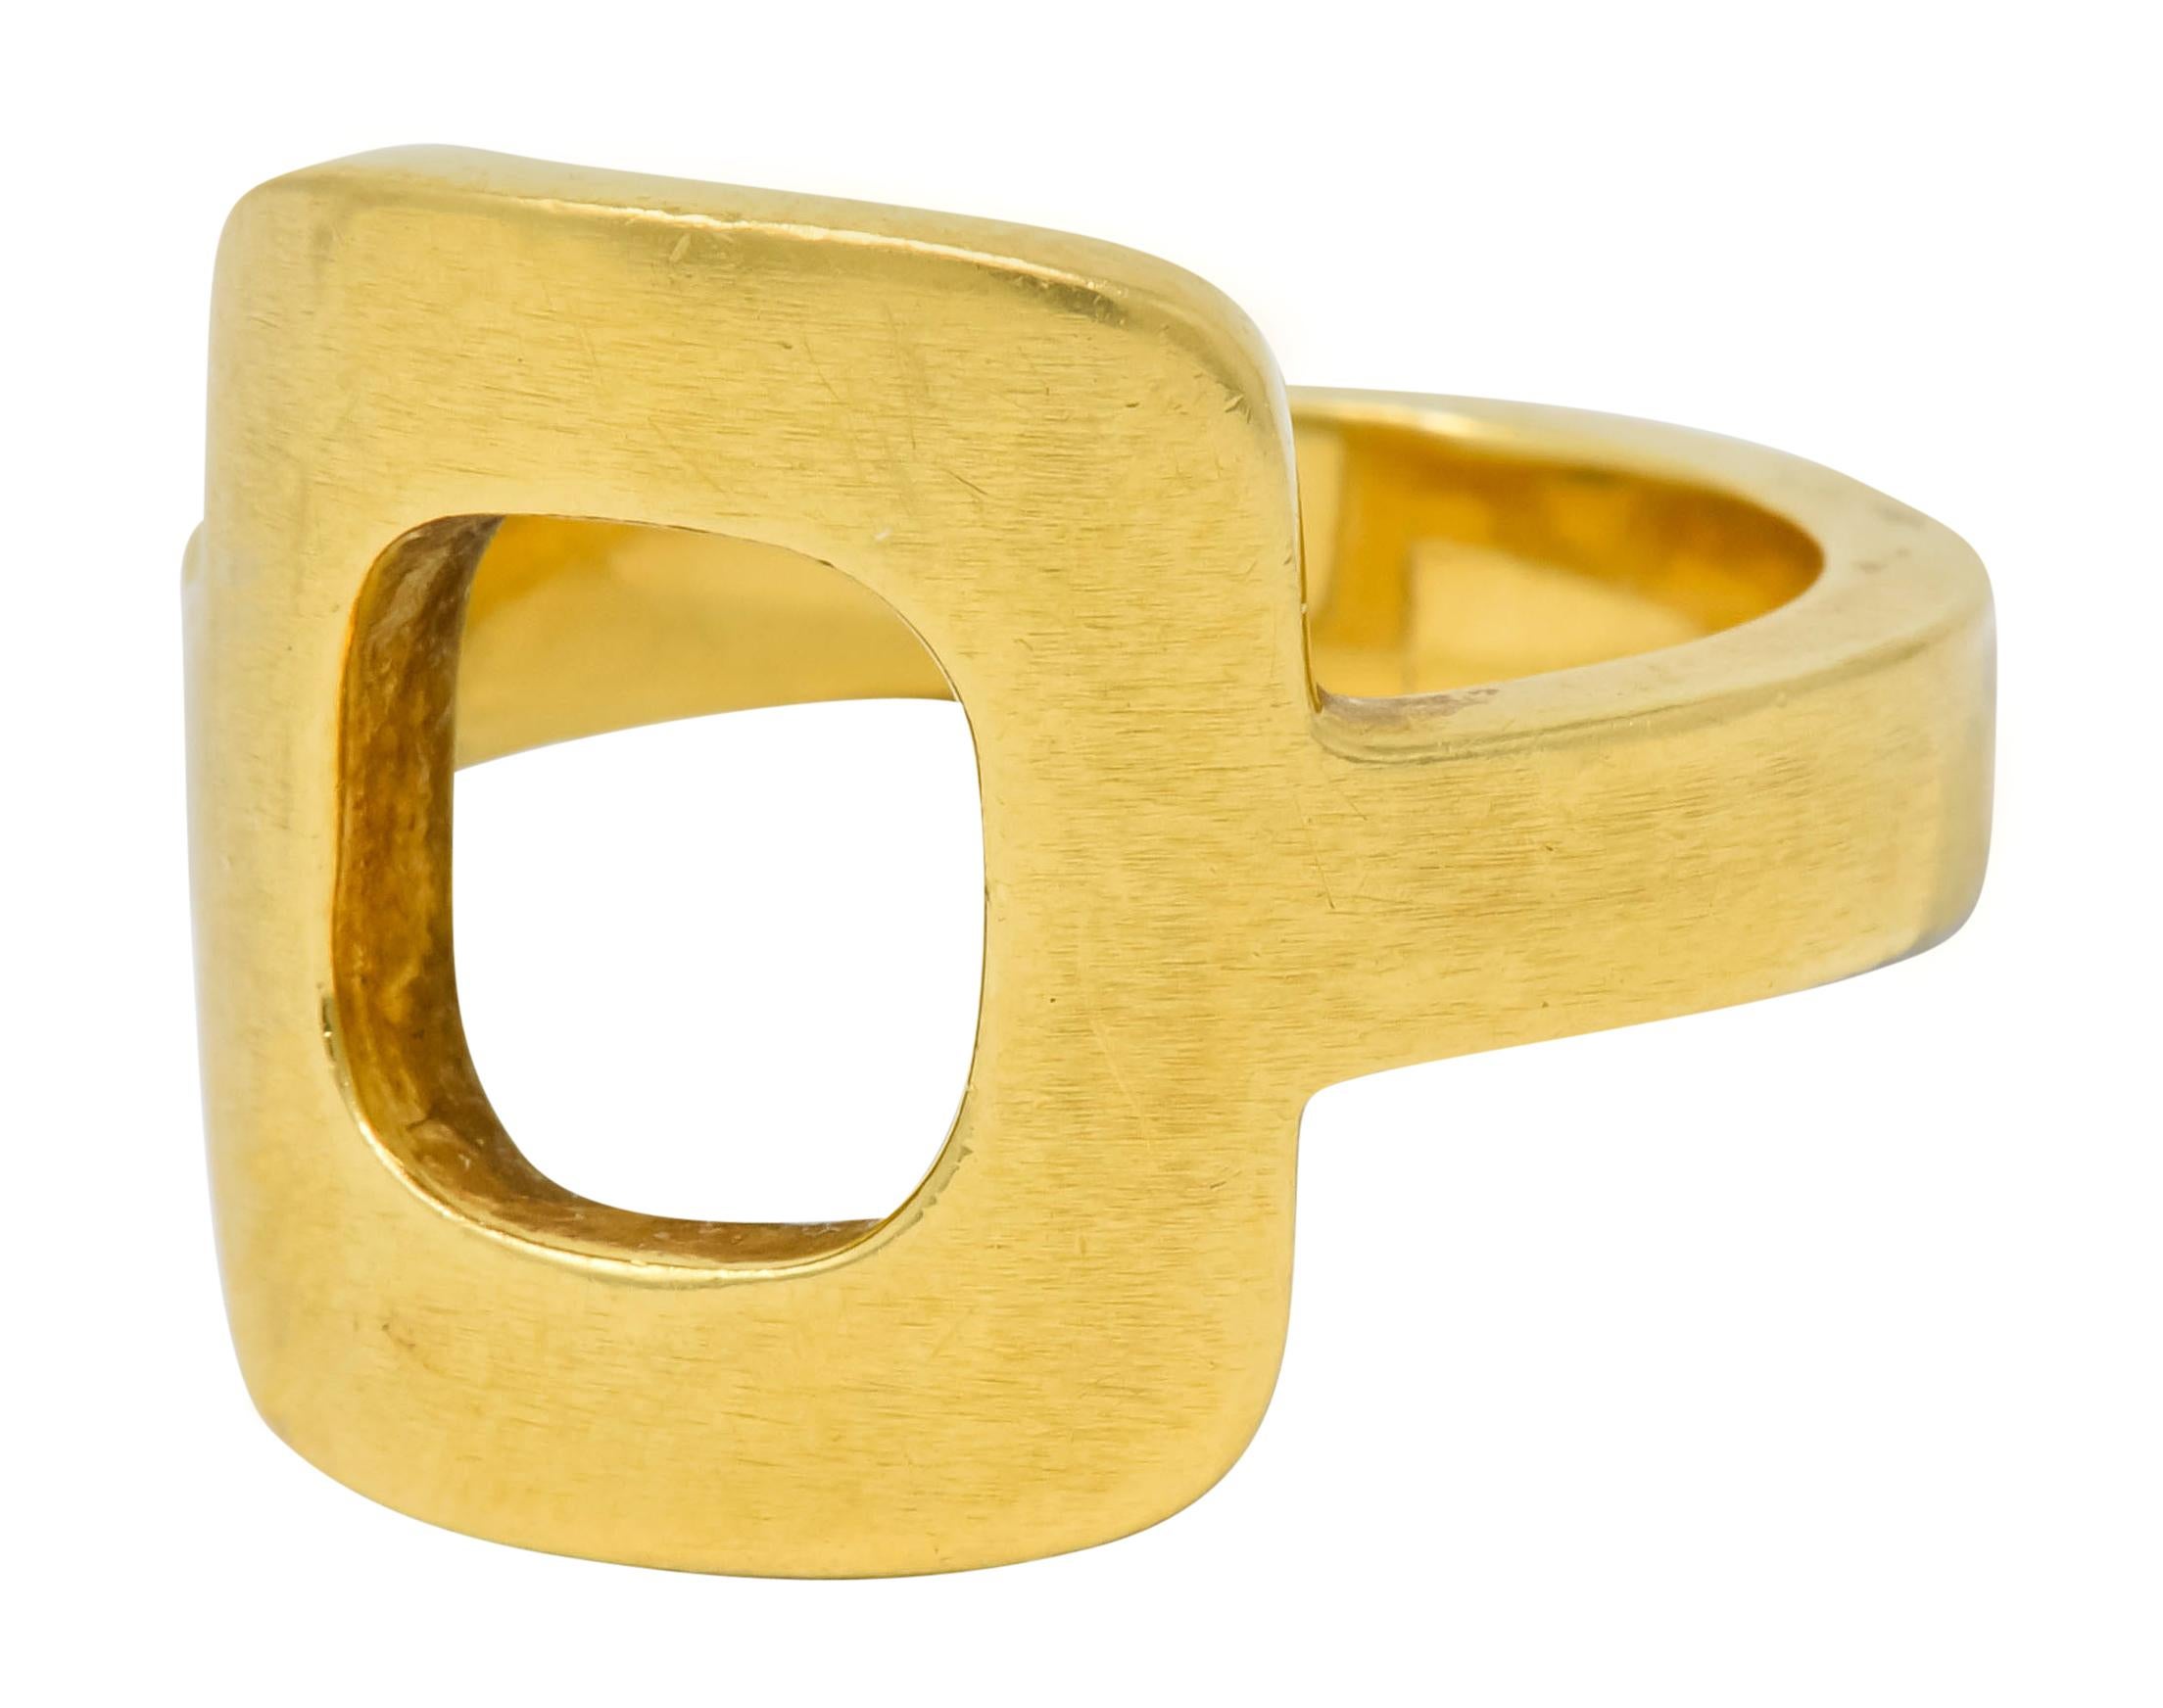 Dinh Van Cartier Modernist 18 Karat Yellow Gold Cushion Ring 2